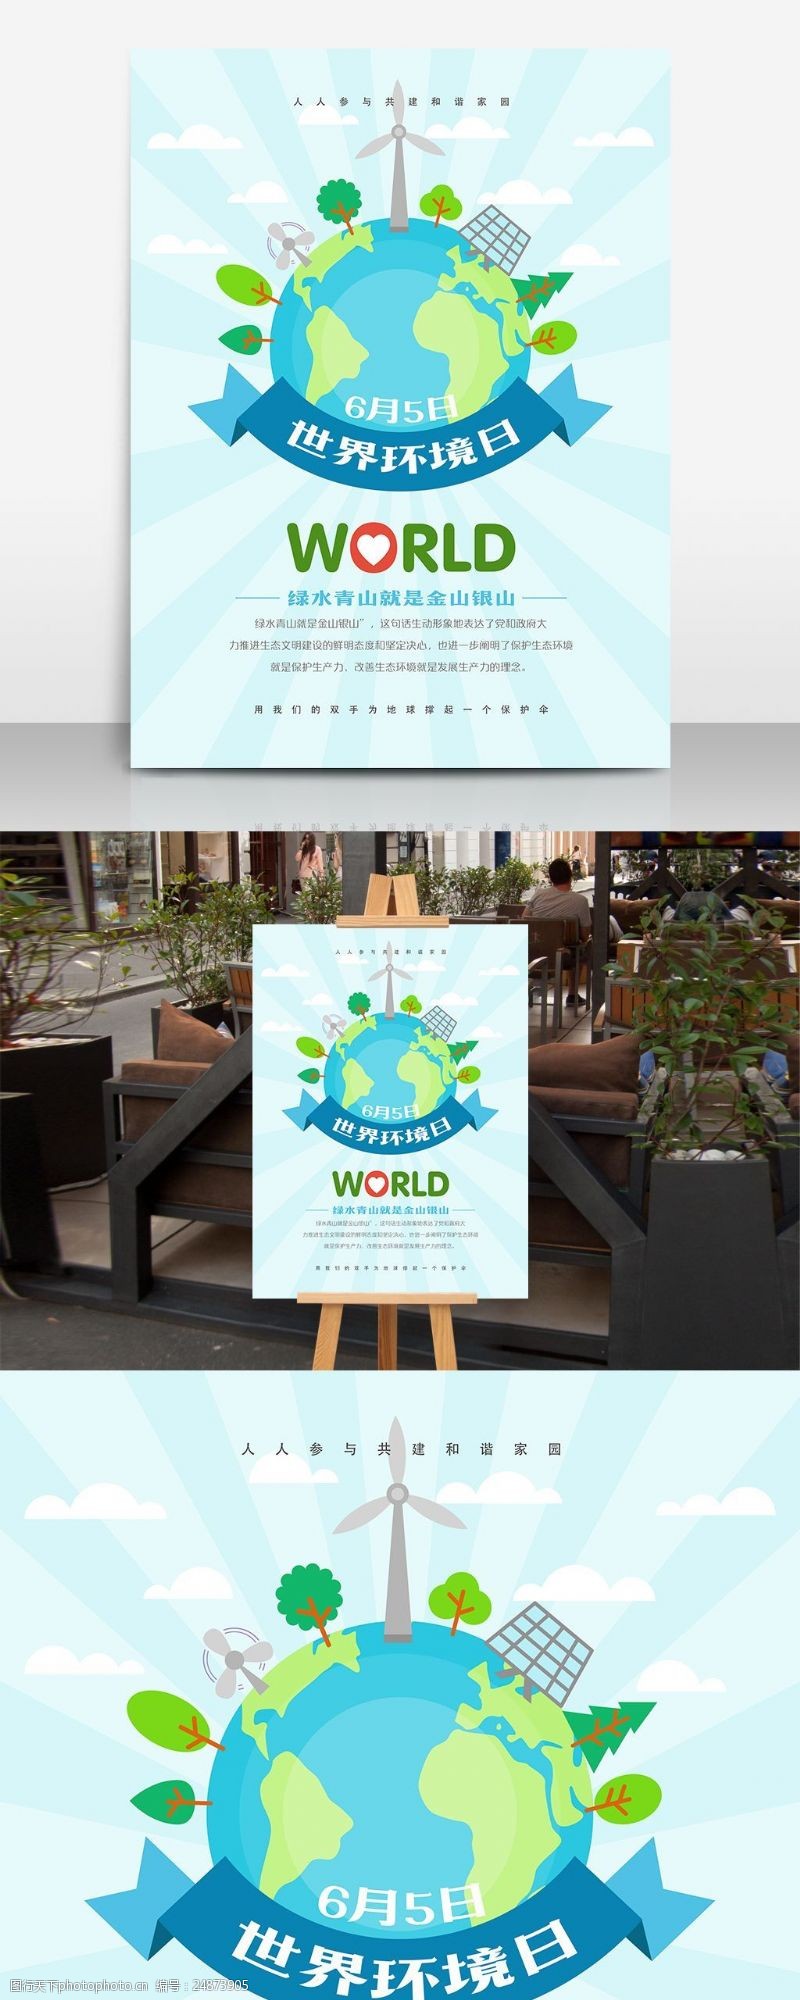 6月5日世界环境日保护环境宣传海报